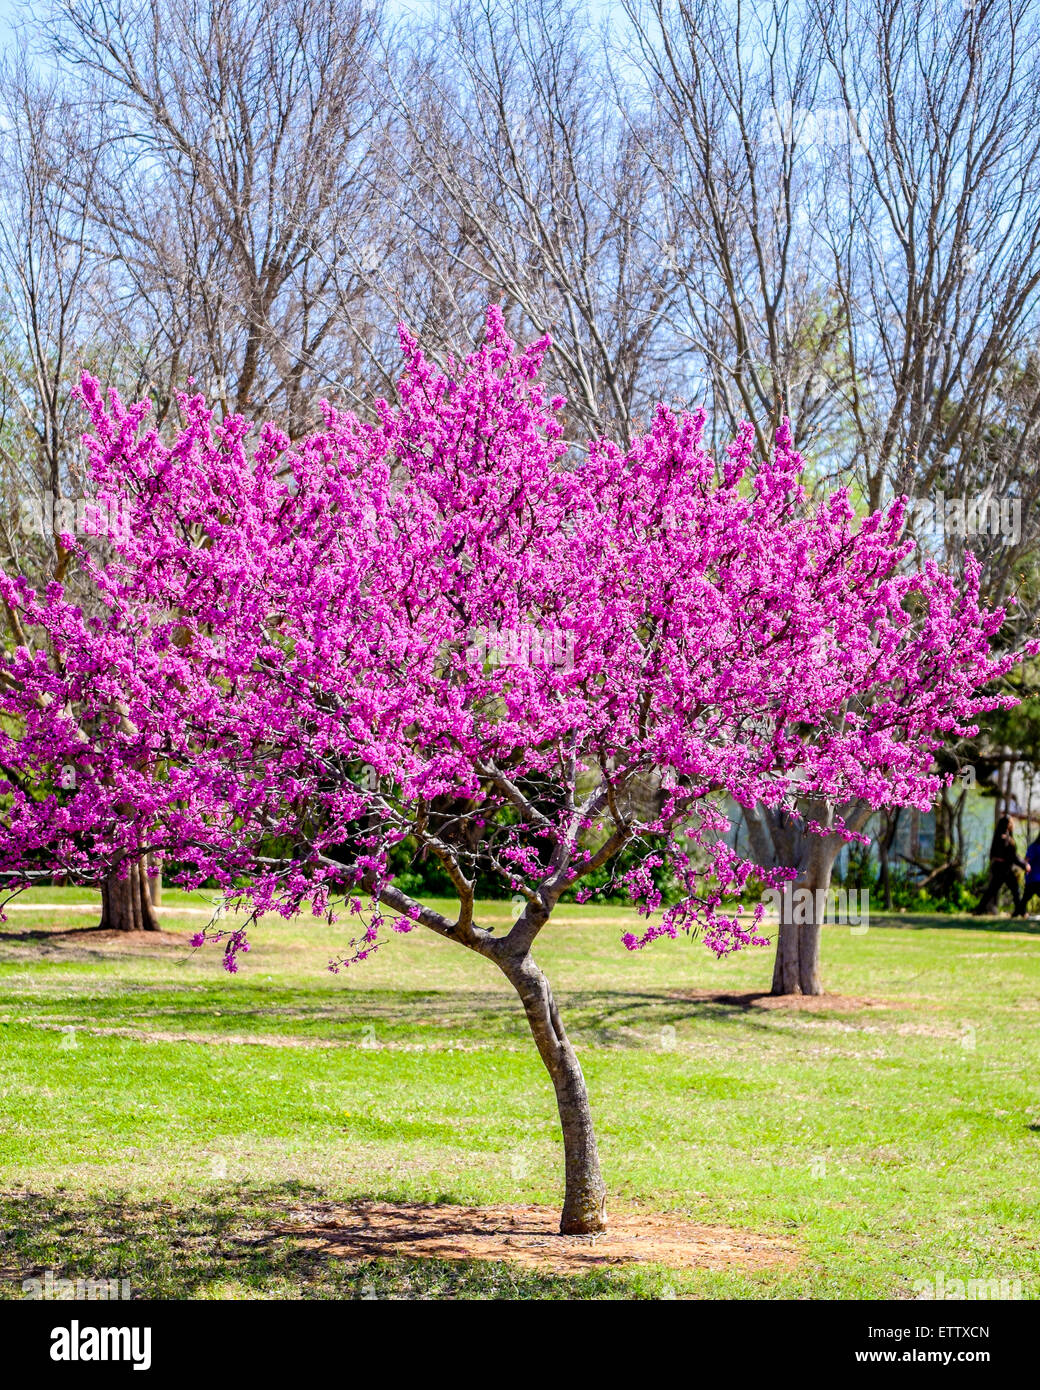 Ein Ostredbud Baum, Cercis Canadensis, im Frühjahr blühen. Die Redbud ist Zustandbaum Oklahomas. Oklahoma City, Oklahoma, USA. Stockfoto